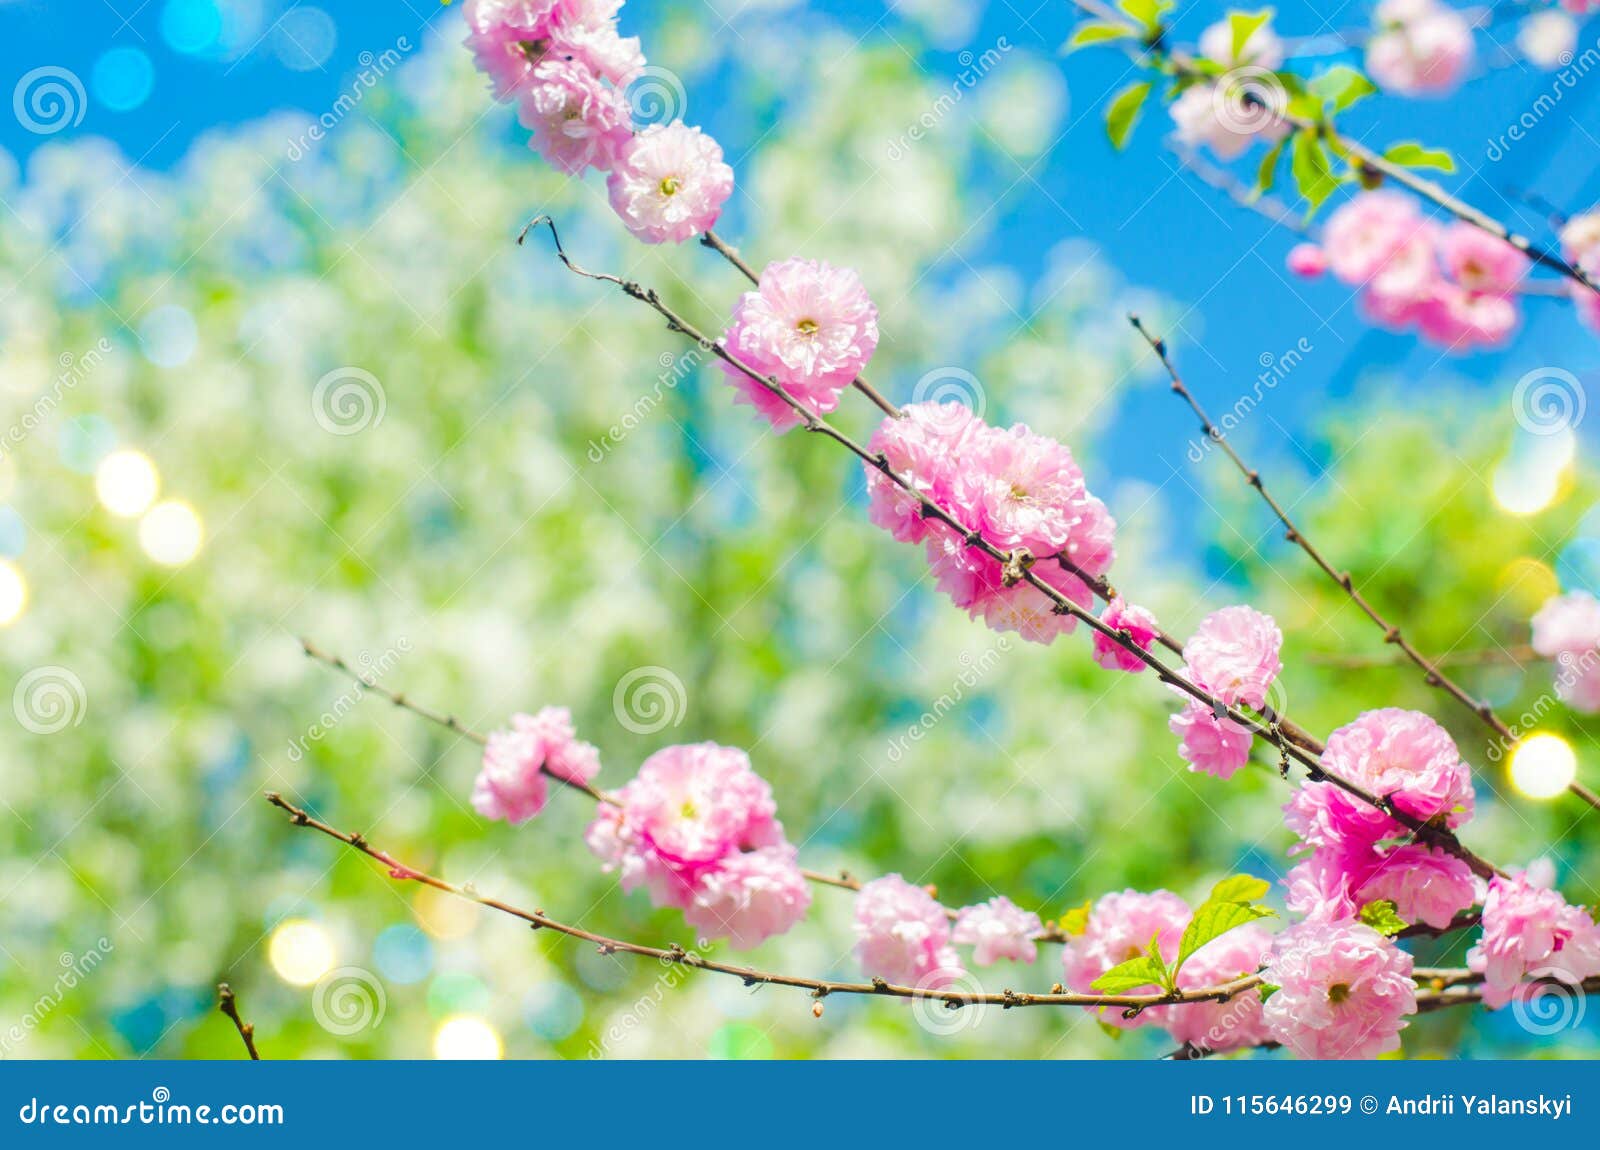 Thưởng thức vẻ đẹp tuyệt đẹp của hoa anh đào nở rộ trong bức hình này! Là một trong những loại hoa nổi tiếng nhất trong văn hóa Nhật Bản, hoa anh đào mang theo thông điệp của sự nở rộ và hy vọng trong cuộc sống. Với những cánh hoa nhẹ nhàng màu hồng, bức hình này sẽ giúp bạn có những phút giây thư giãn và tận hưởng vẻ đẹp của thiên nhiên.